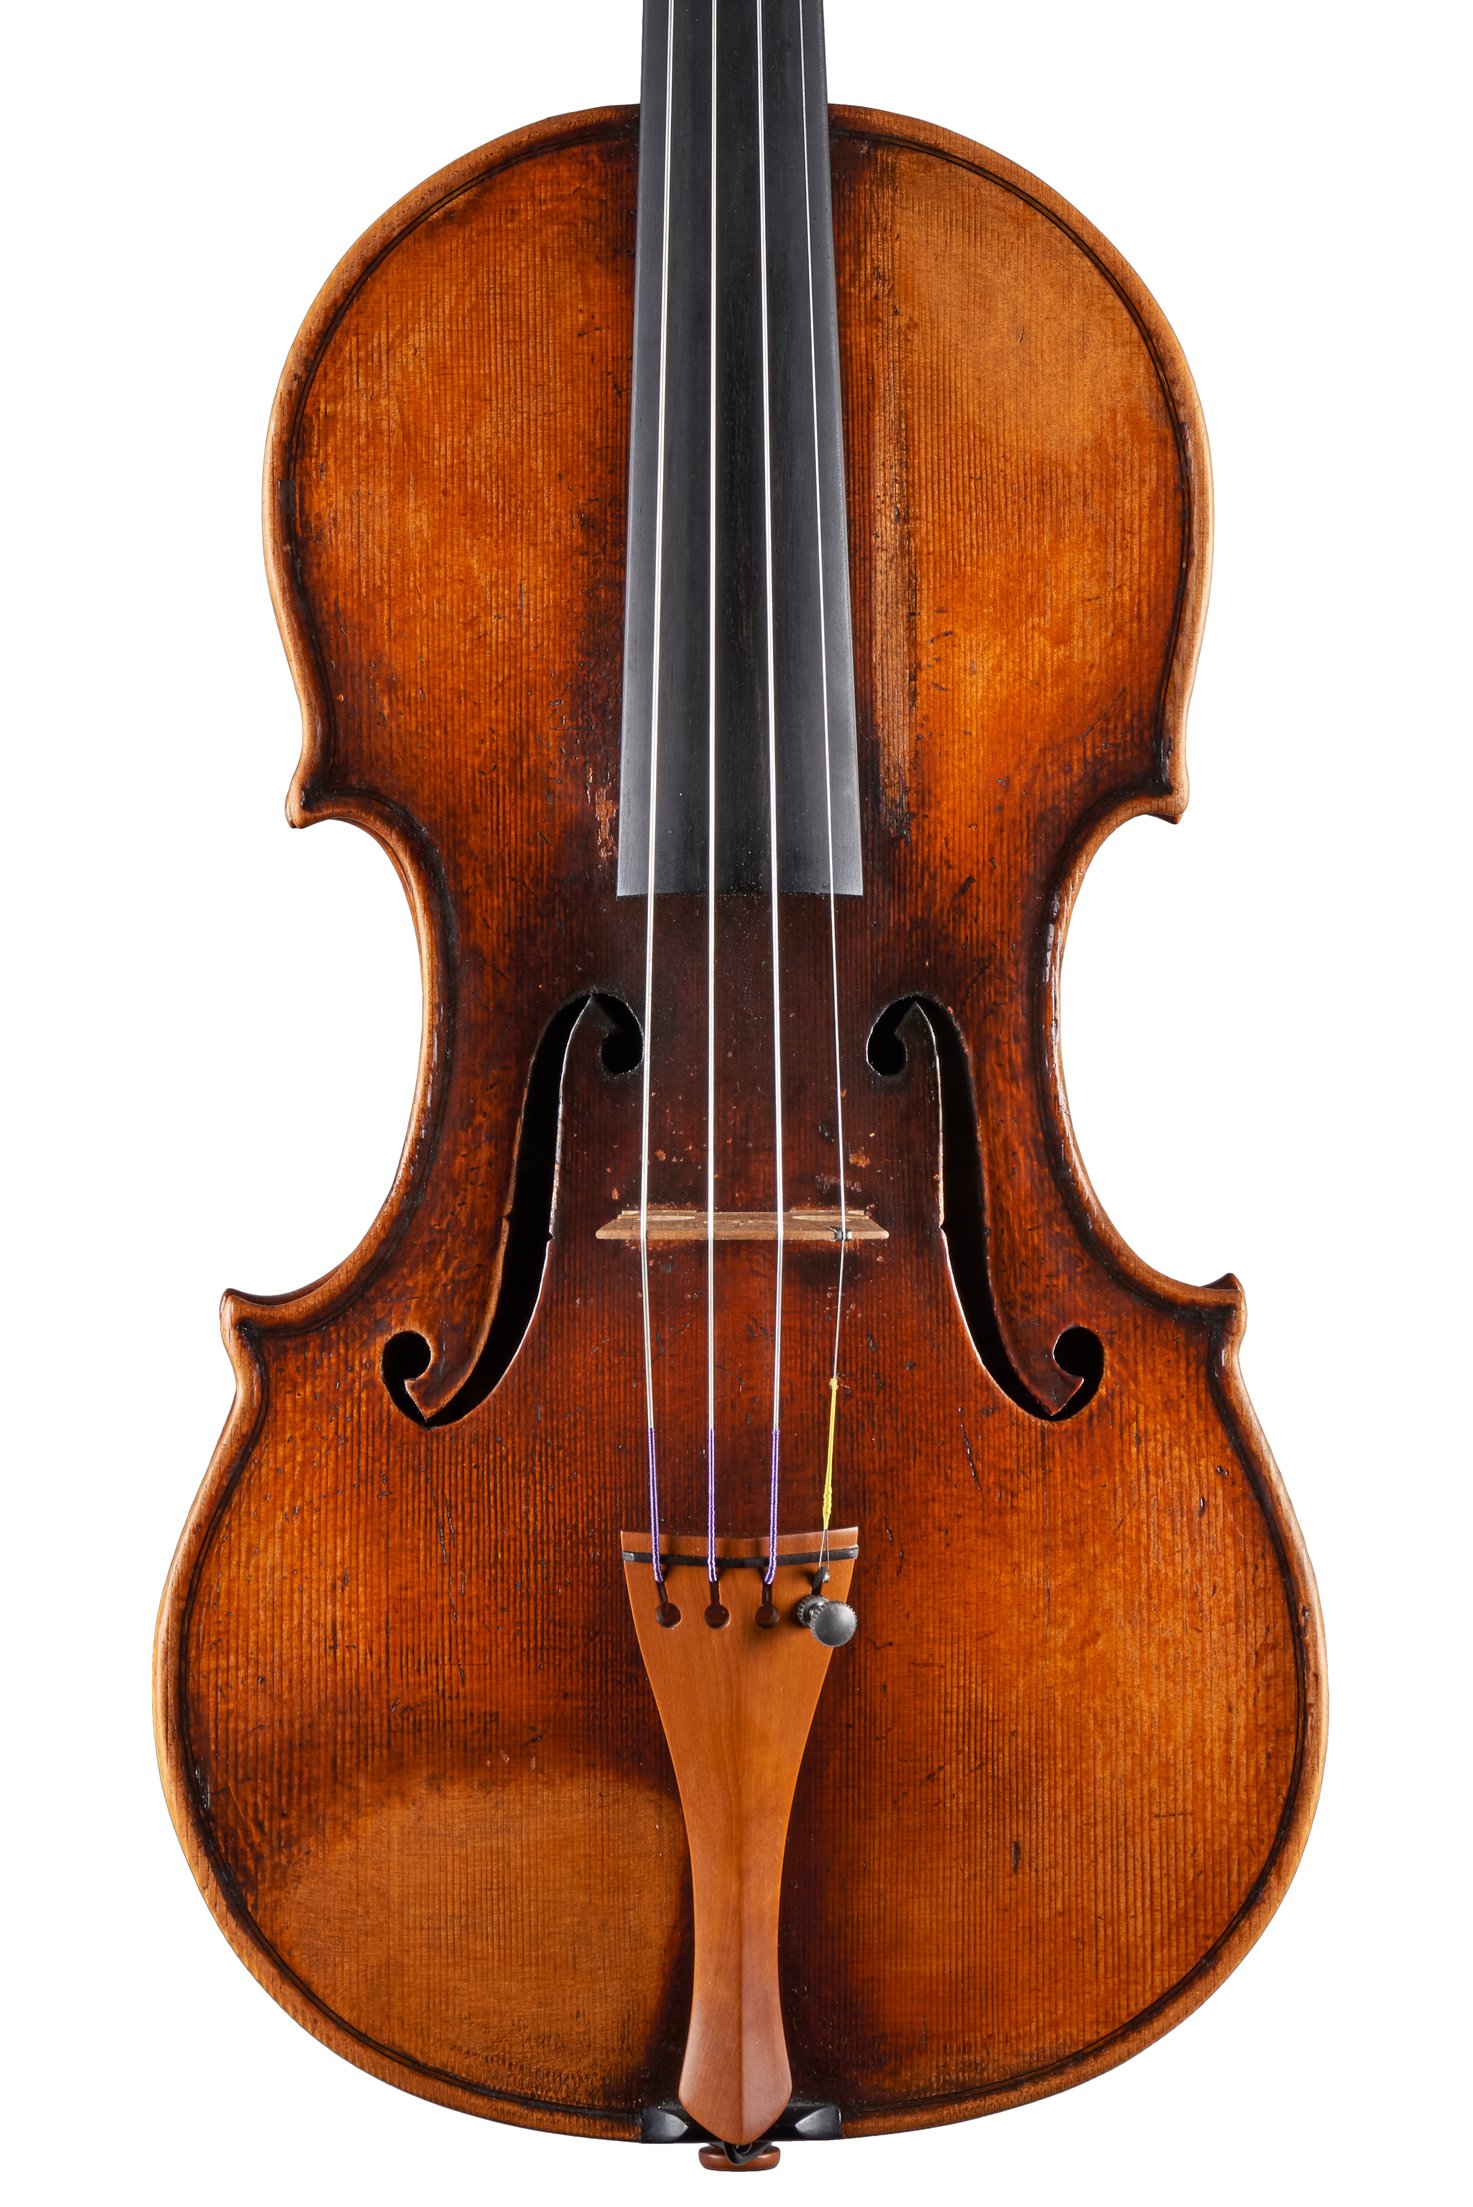 Contemporary Violin copy of Guarneri Il Cannone on white background by Luiz Amorim